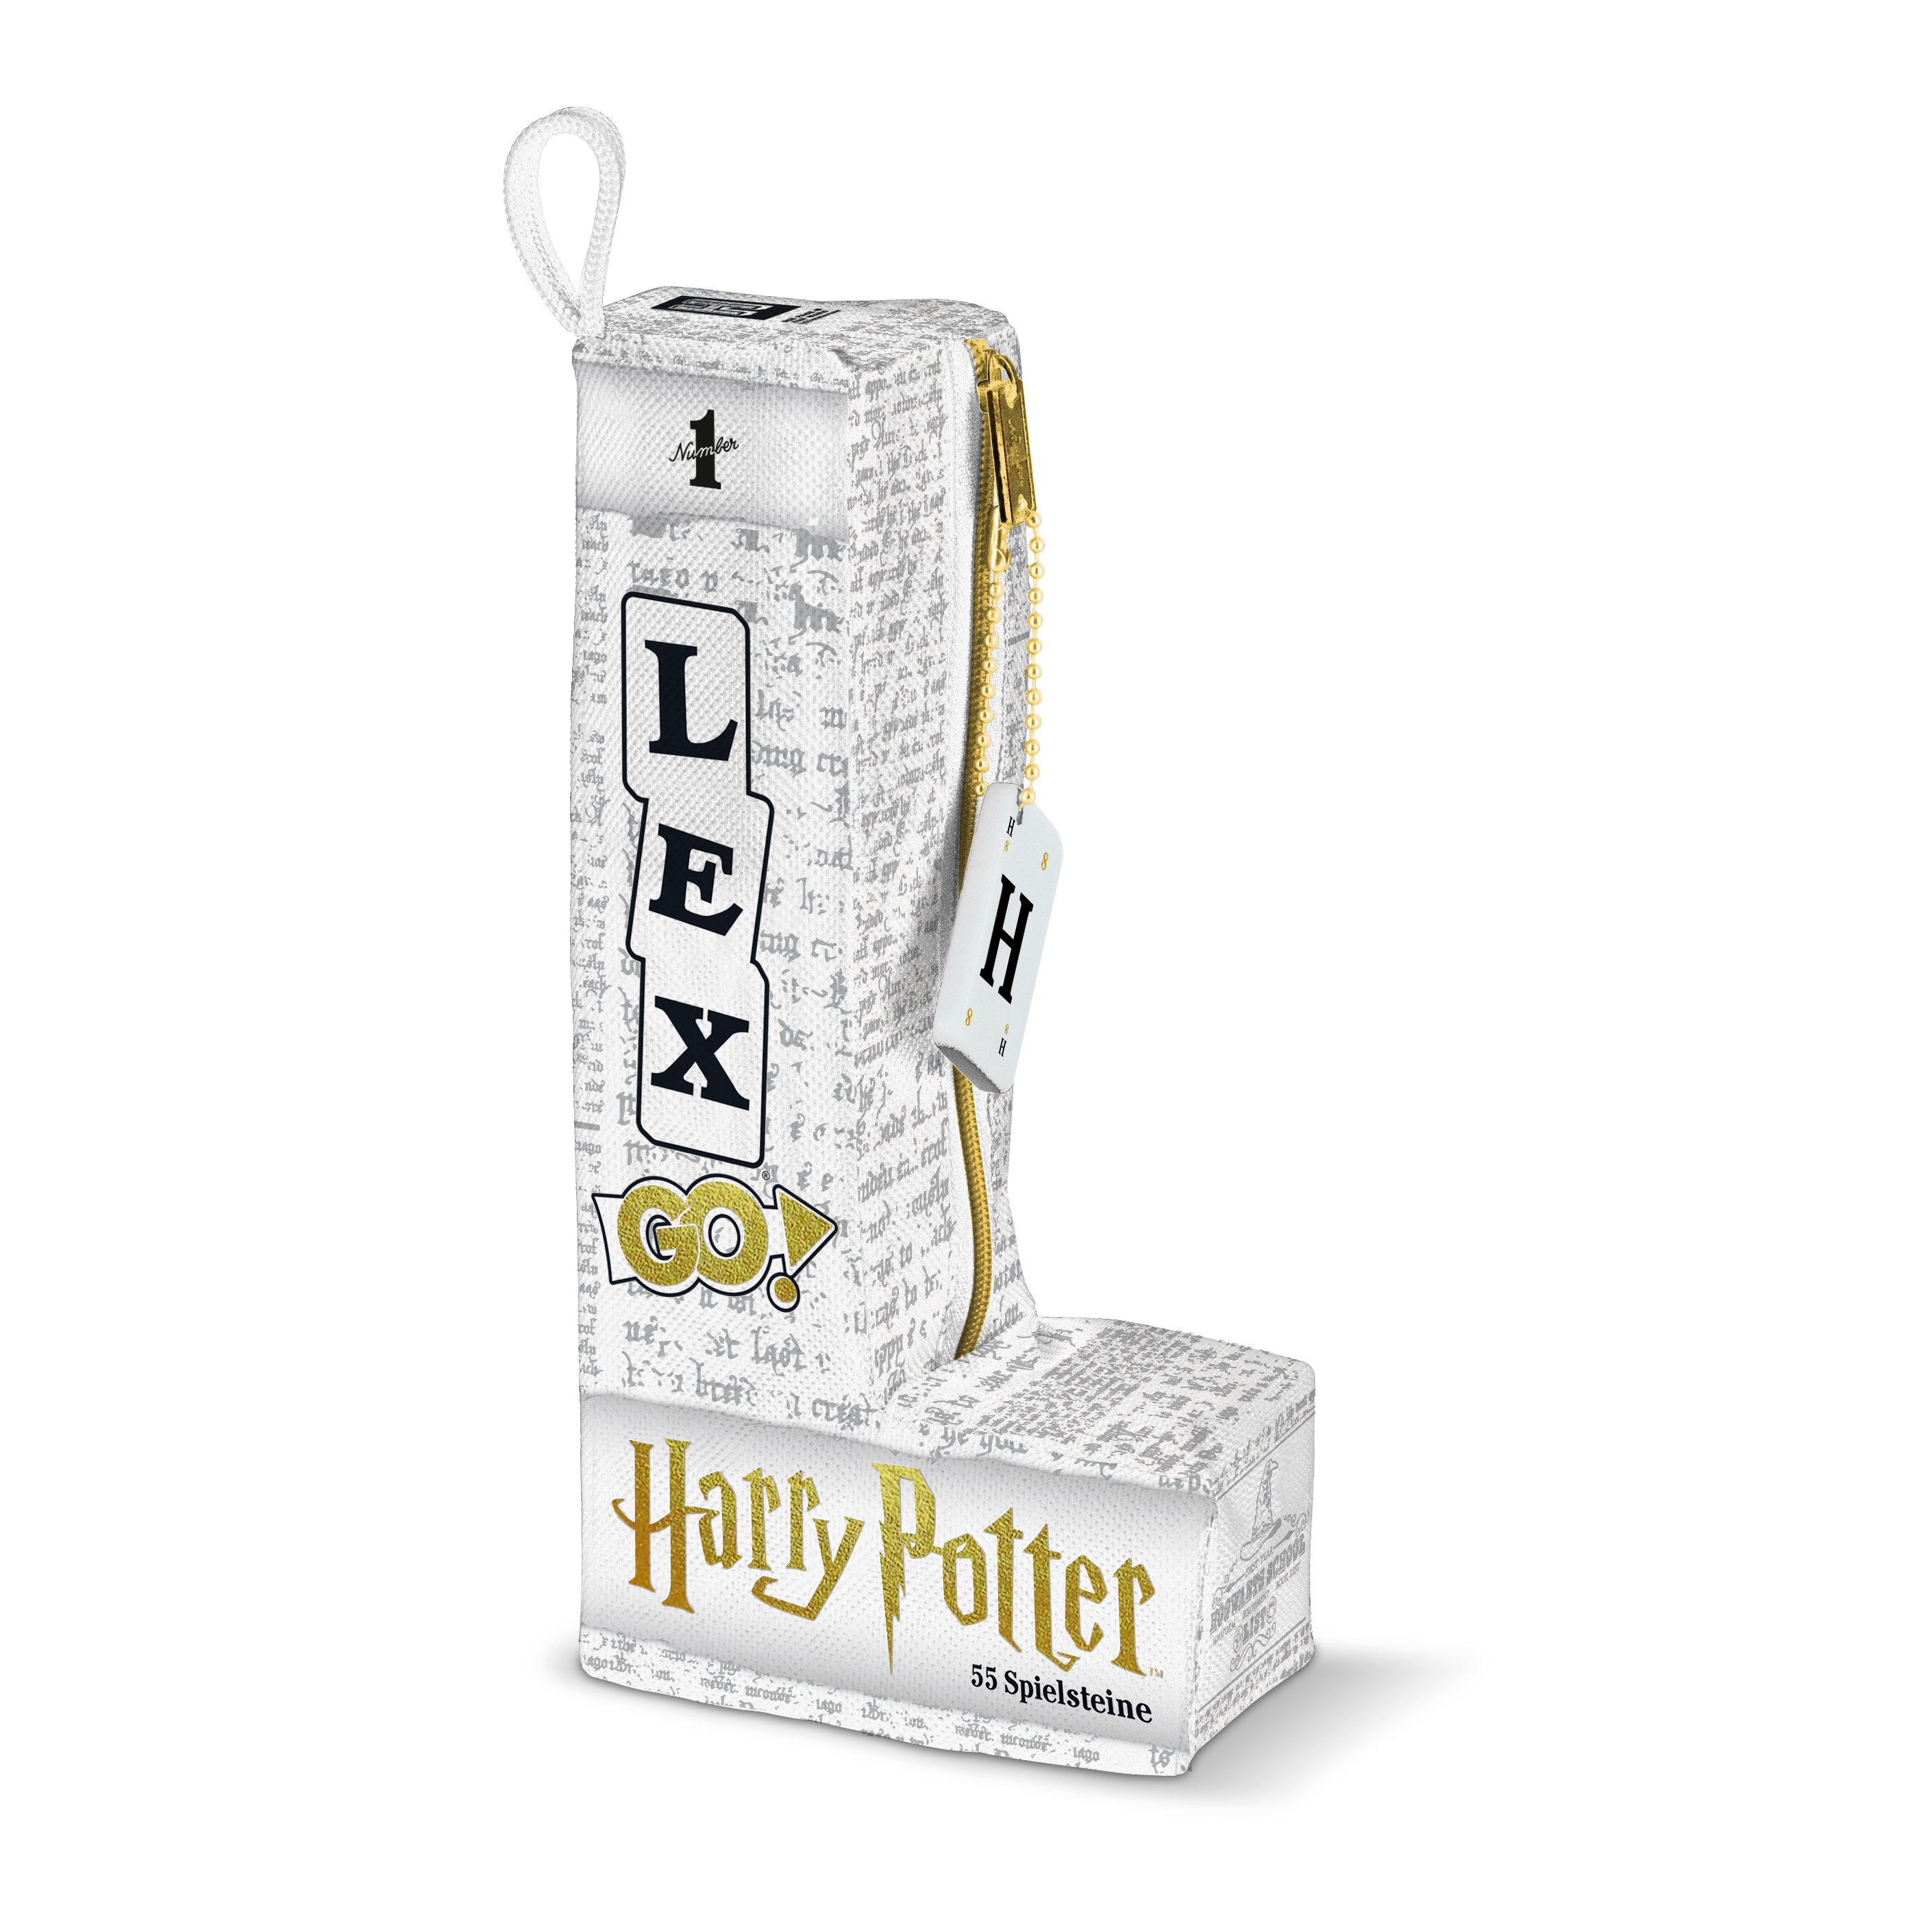 LEX GO! Harry Potter Edition – Das superschnelle Wort-Spiel